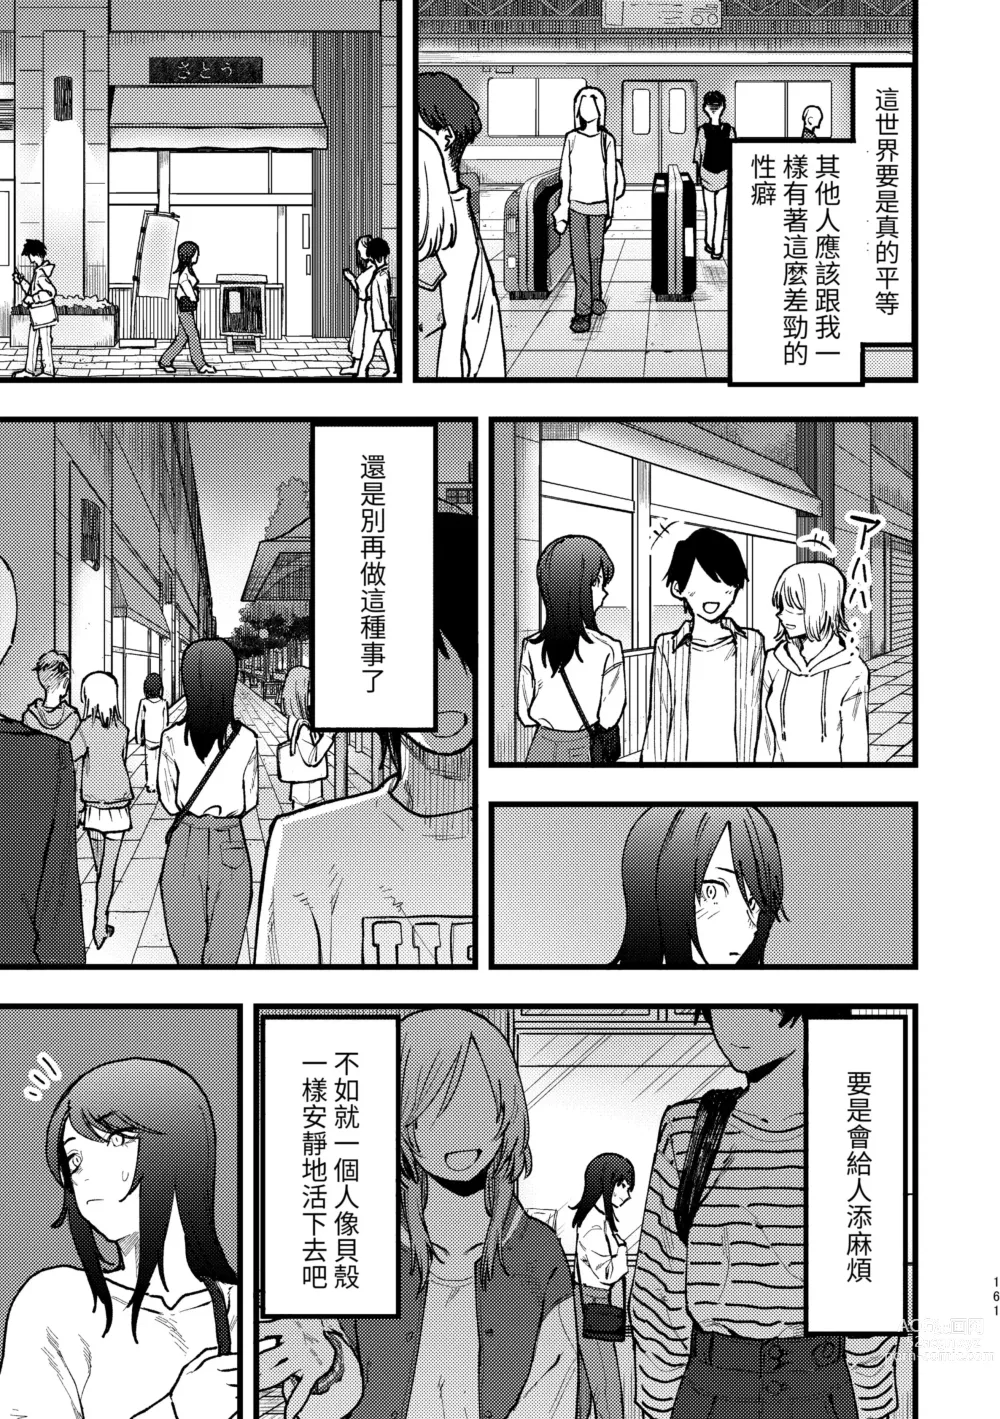 Page 3 of manga Hasamaru Onna